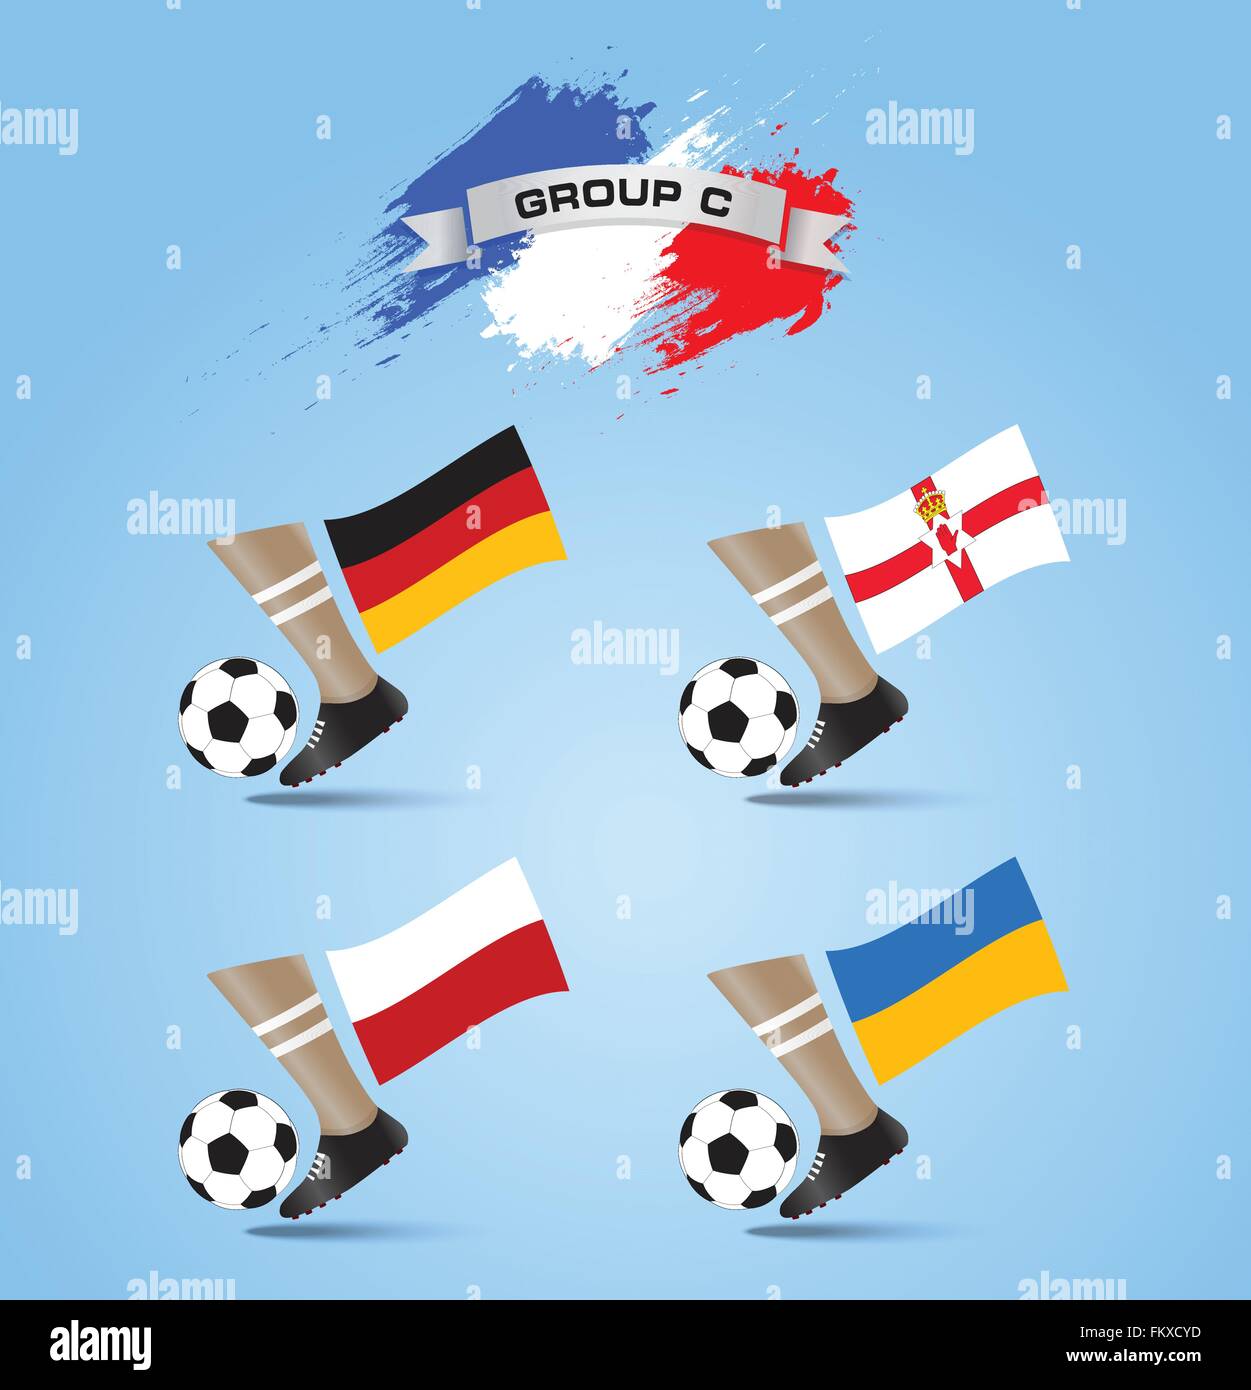 France 2016 Championnat de soccer tournoi final du groupe C Illustration de Vecteur